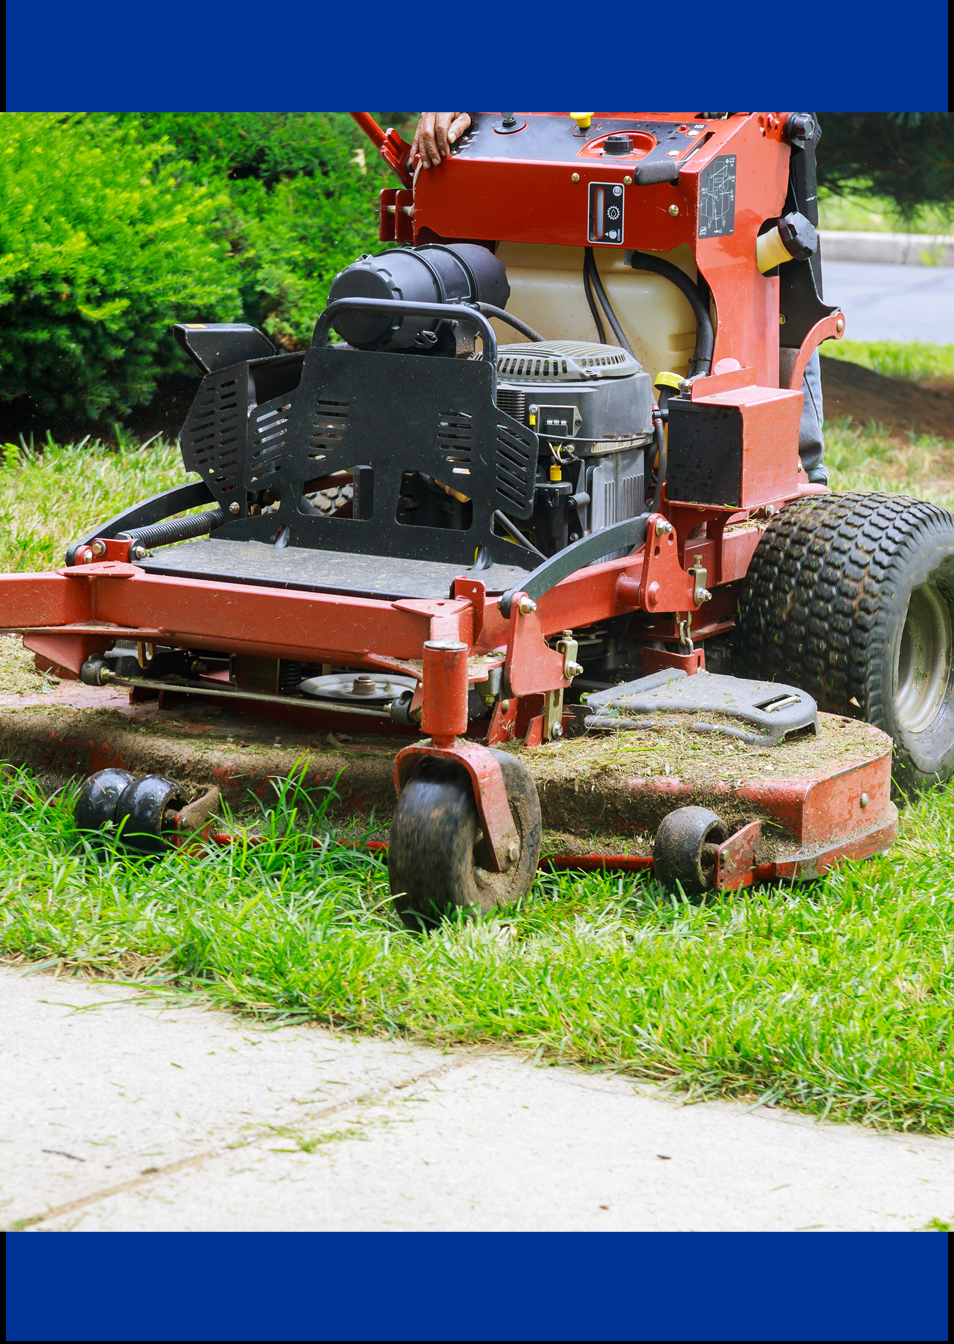 Soluciones de cojinetes de GGB para tractores de jardín y aplicaciones agrícolas